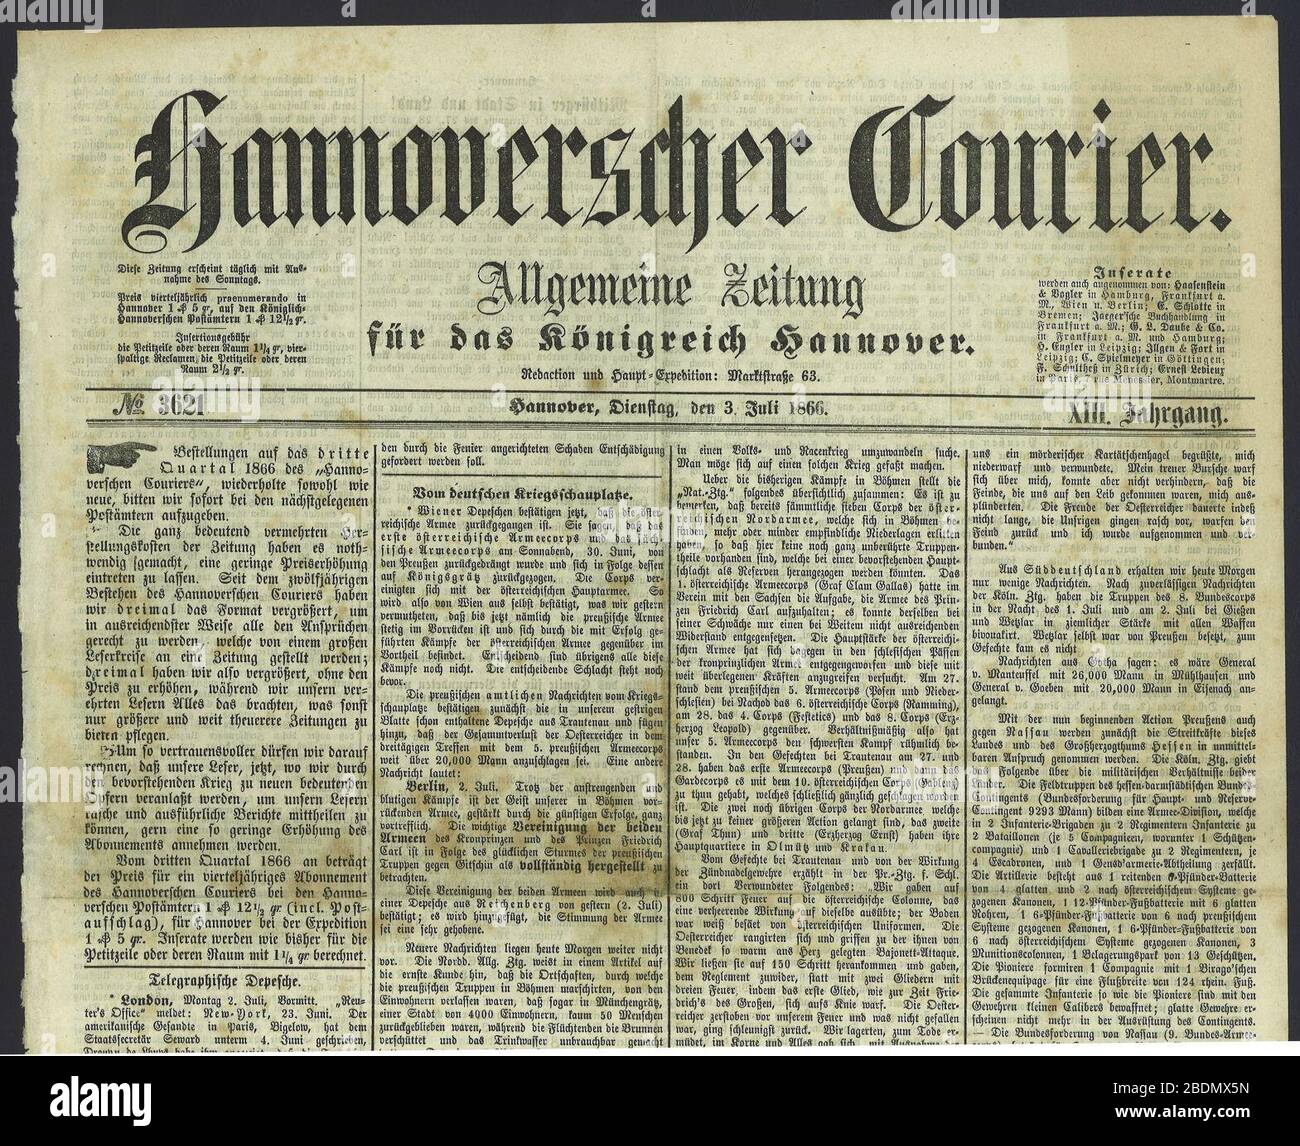 Hannoverscher Kurier No. 03621, Seite 1 oben, 1866-07-03. Stock Photo